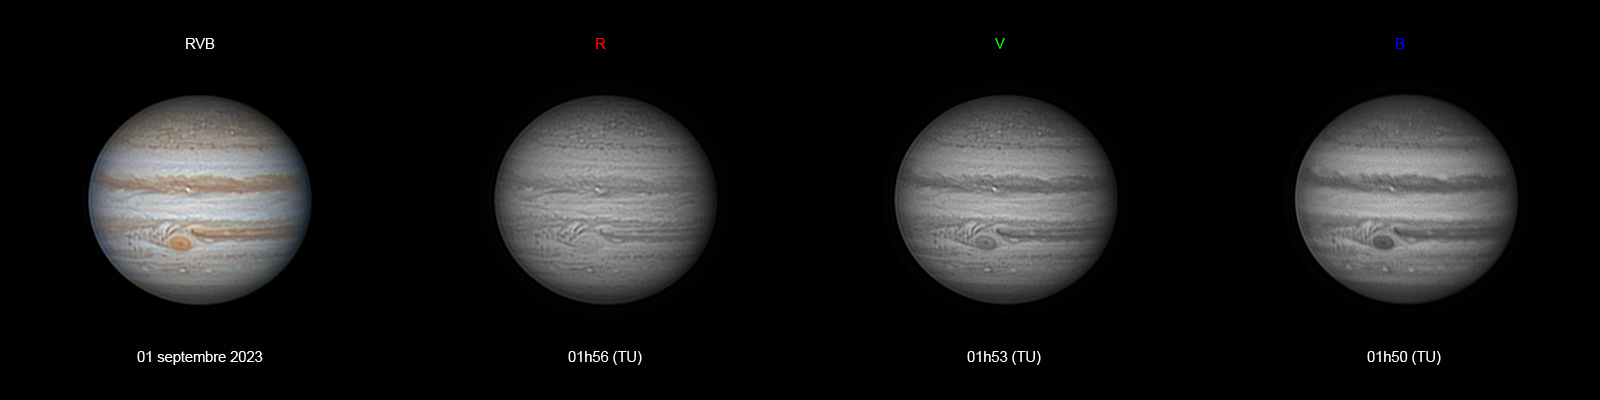 Jupiter-20231001-ba-RVB-Planche-AS.jpg.e3b100dfb12f99a4dc8b9a483fc2c67f.jpg